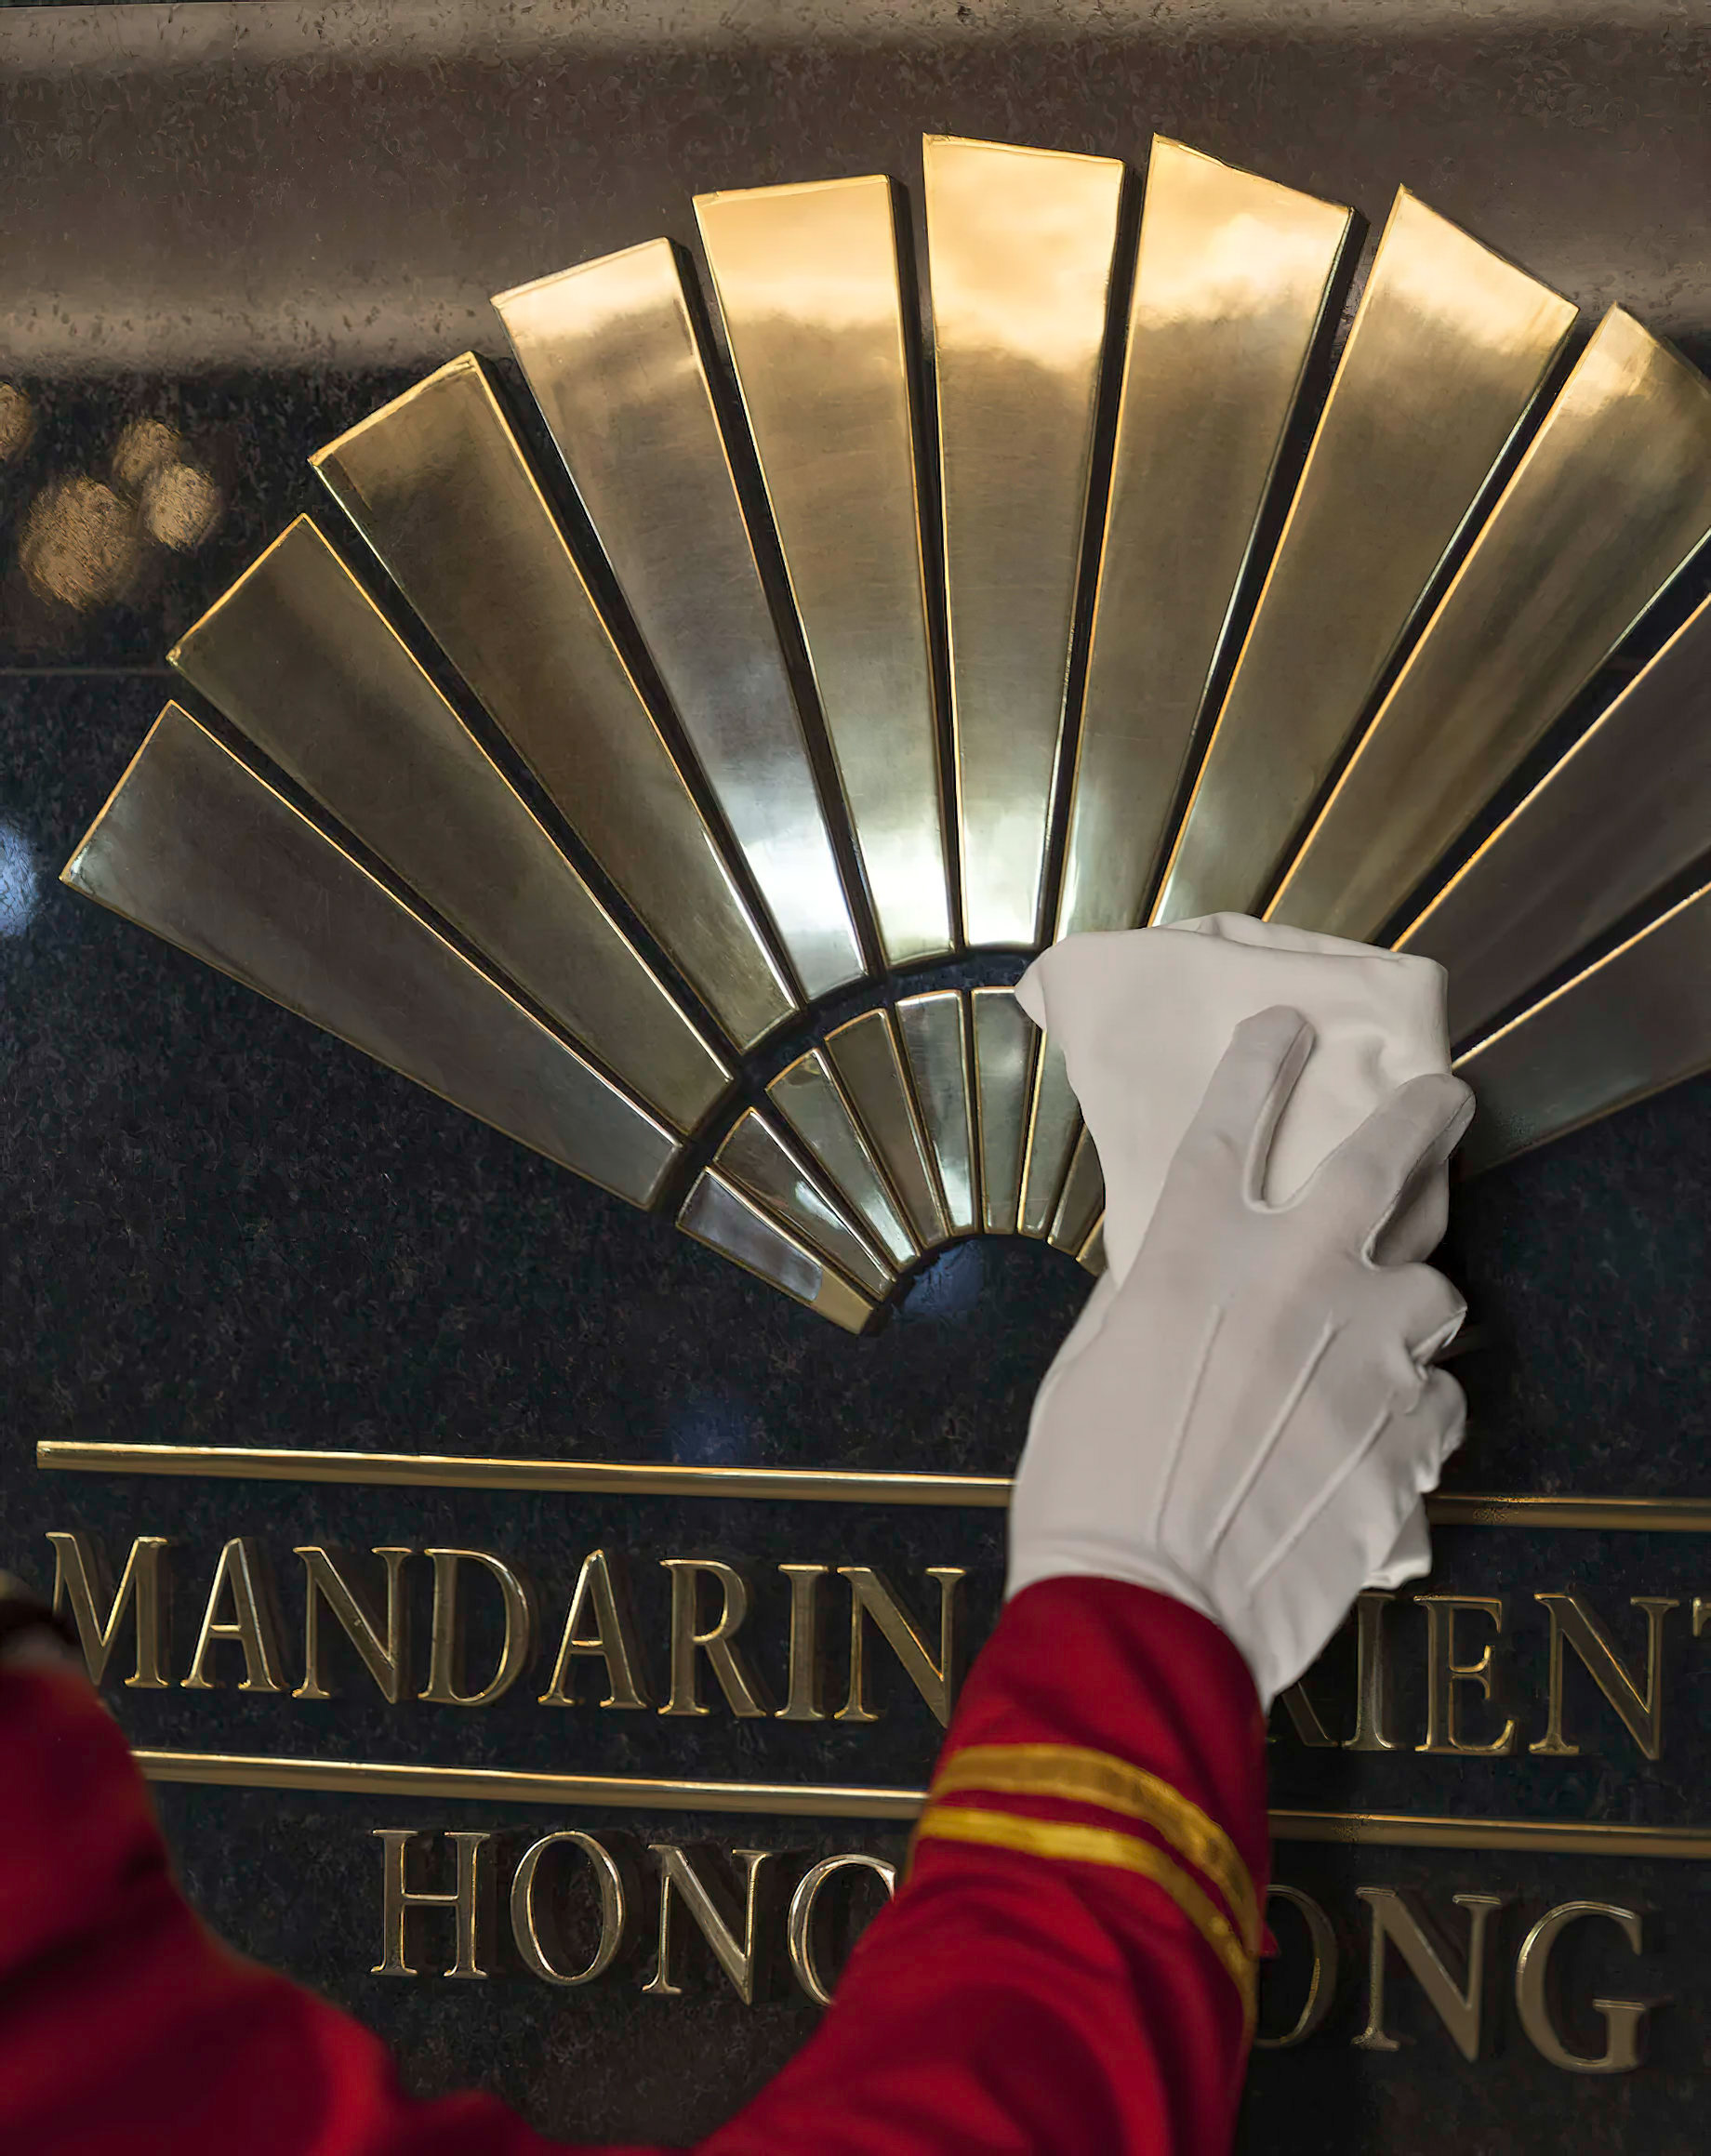 Mandarin Oriental, Hong Kong Hotel – Hong Kong, China – Doorman